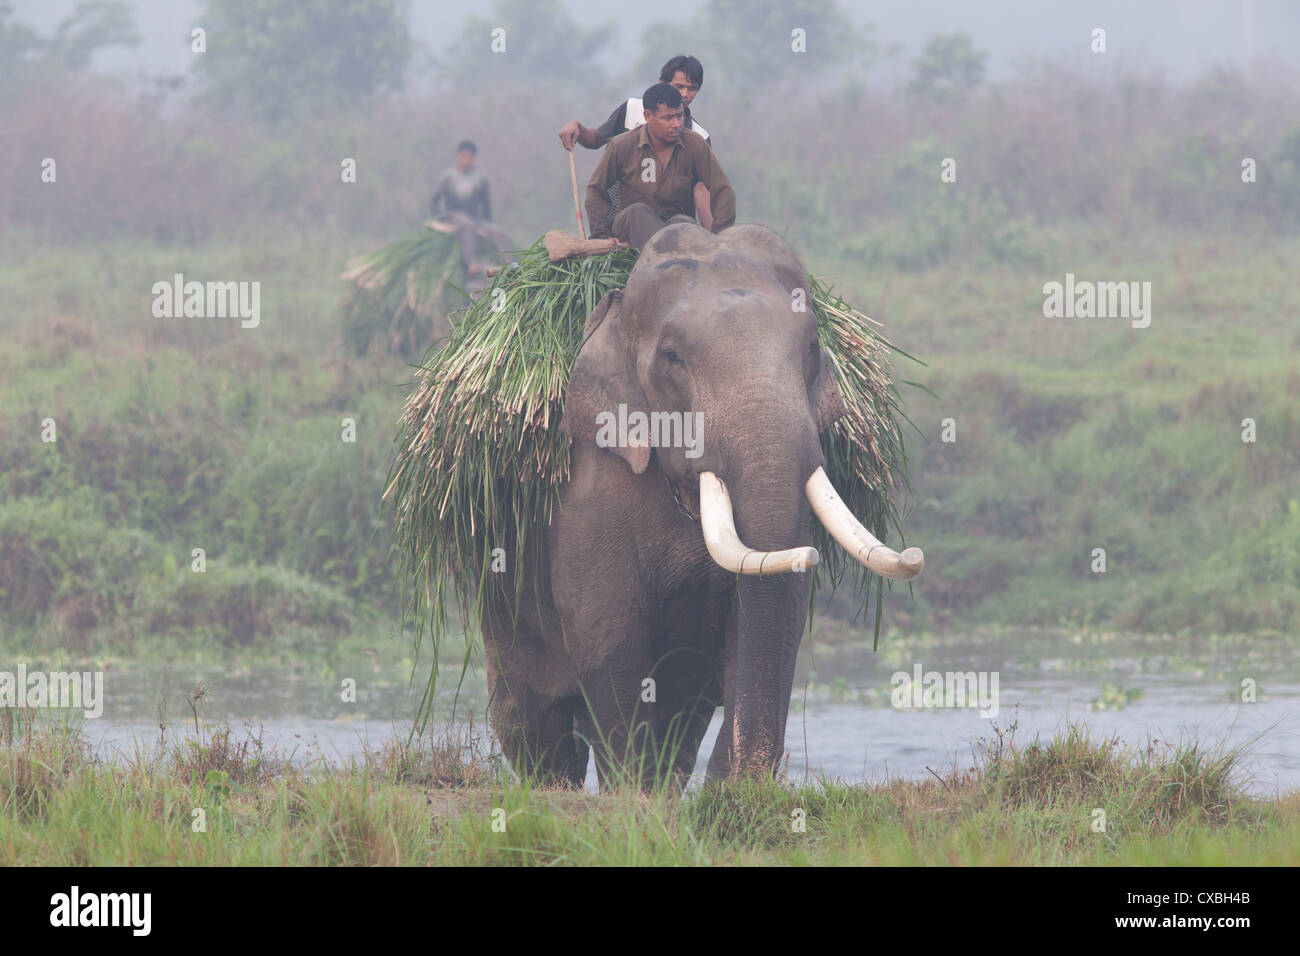 Équitation hommes éléphants après la collecte de l'herbe pour fourrage, parc national de Chitwan, au Népal Banque D'Images